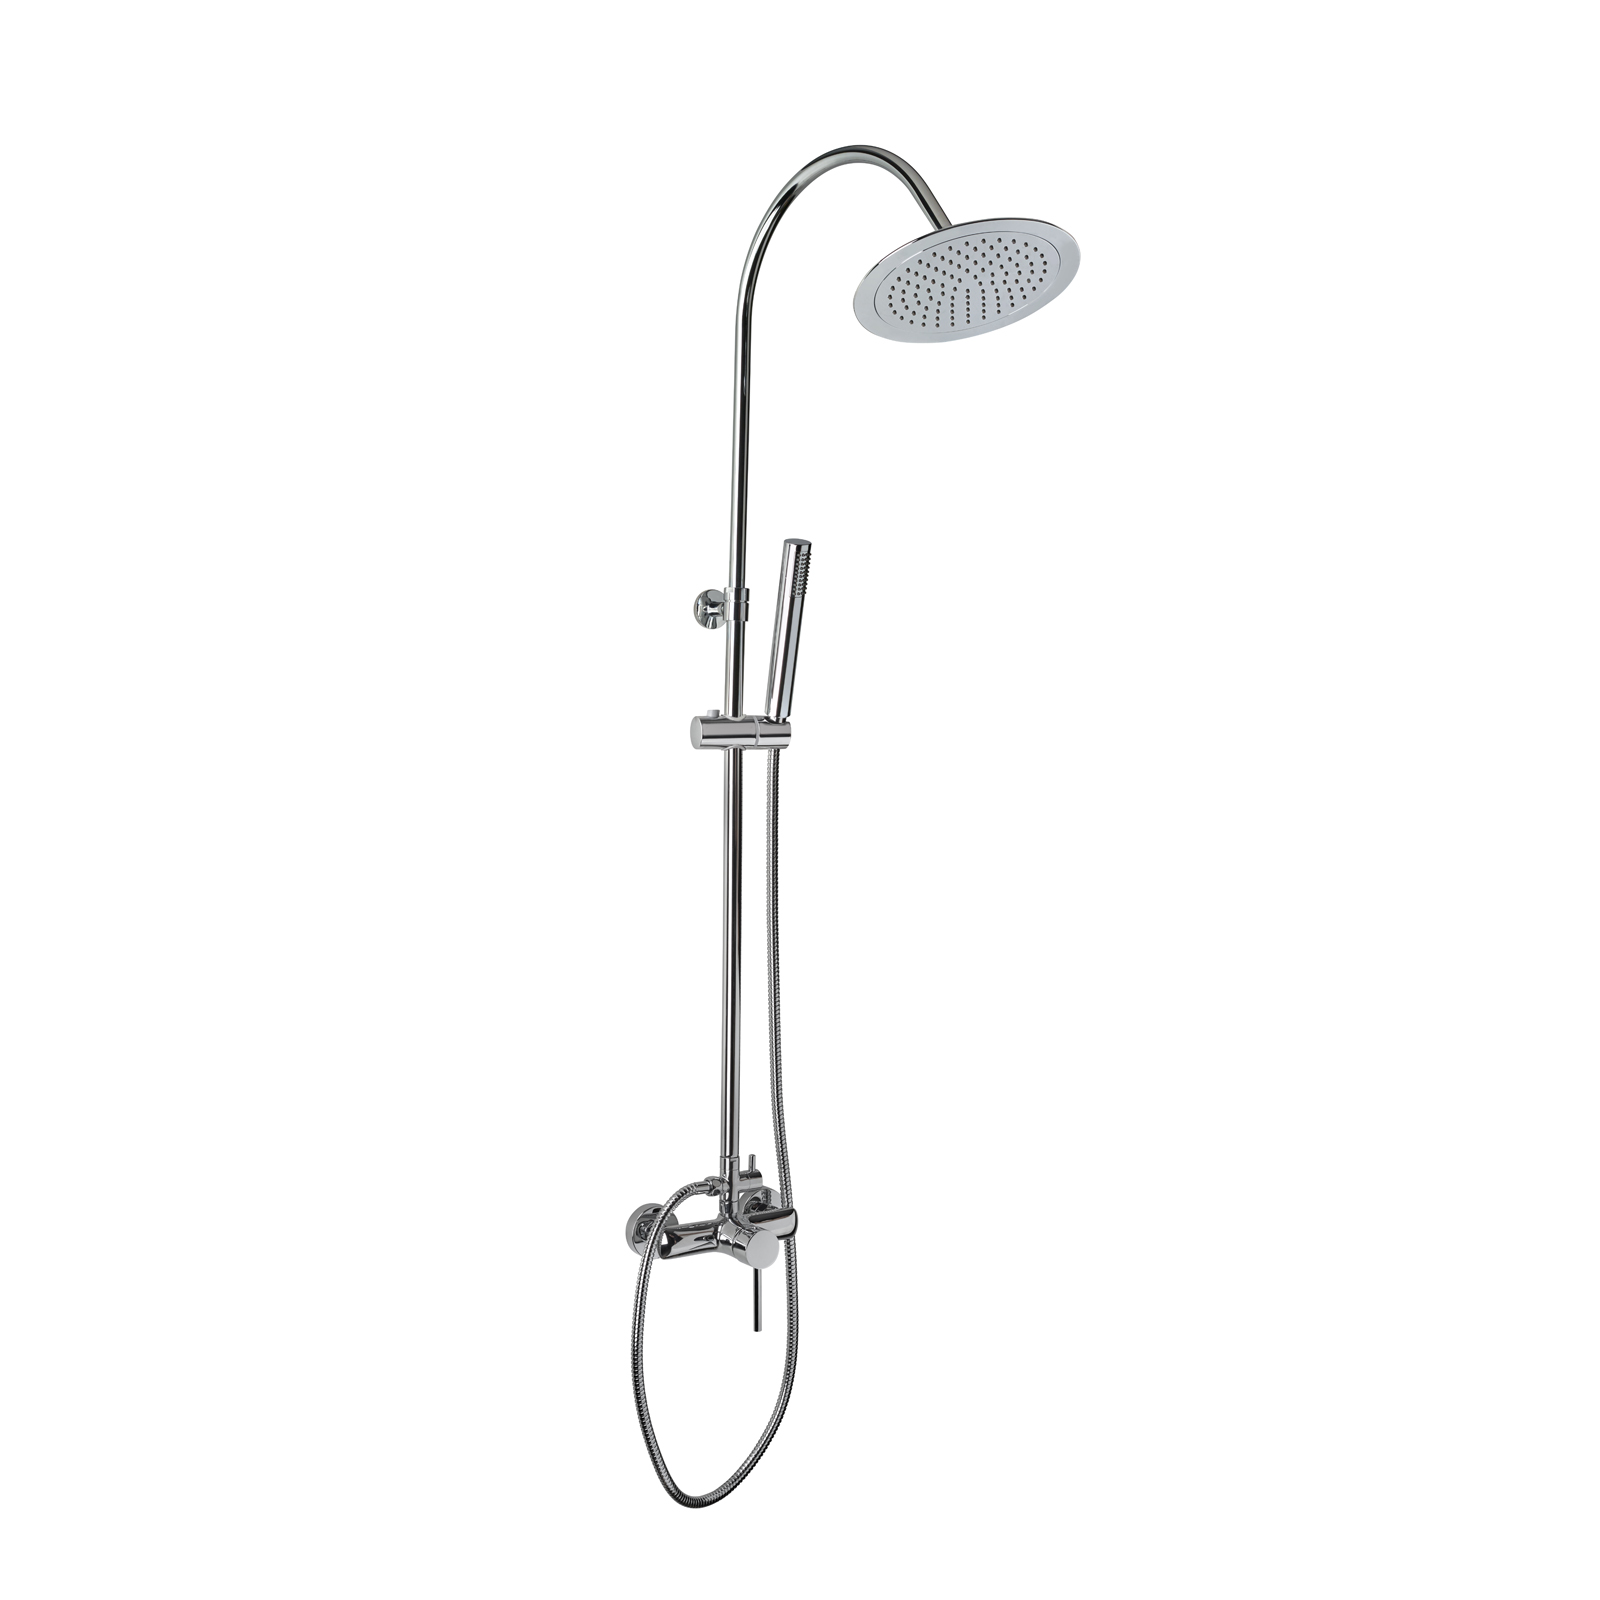  Colonne réglable de douche télescopique avec mitigeur de douche, inverseur automatique, complet avec rose auto-nettoyant et kit de douche